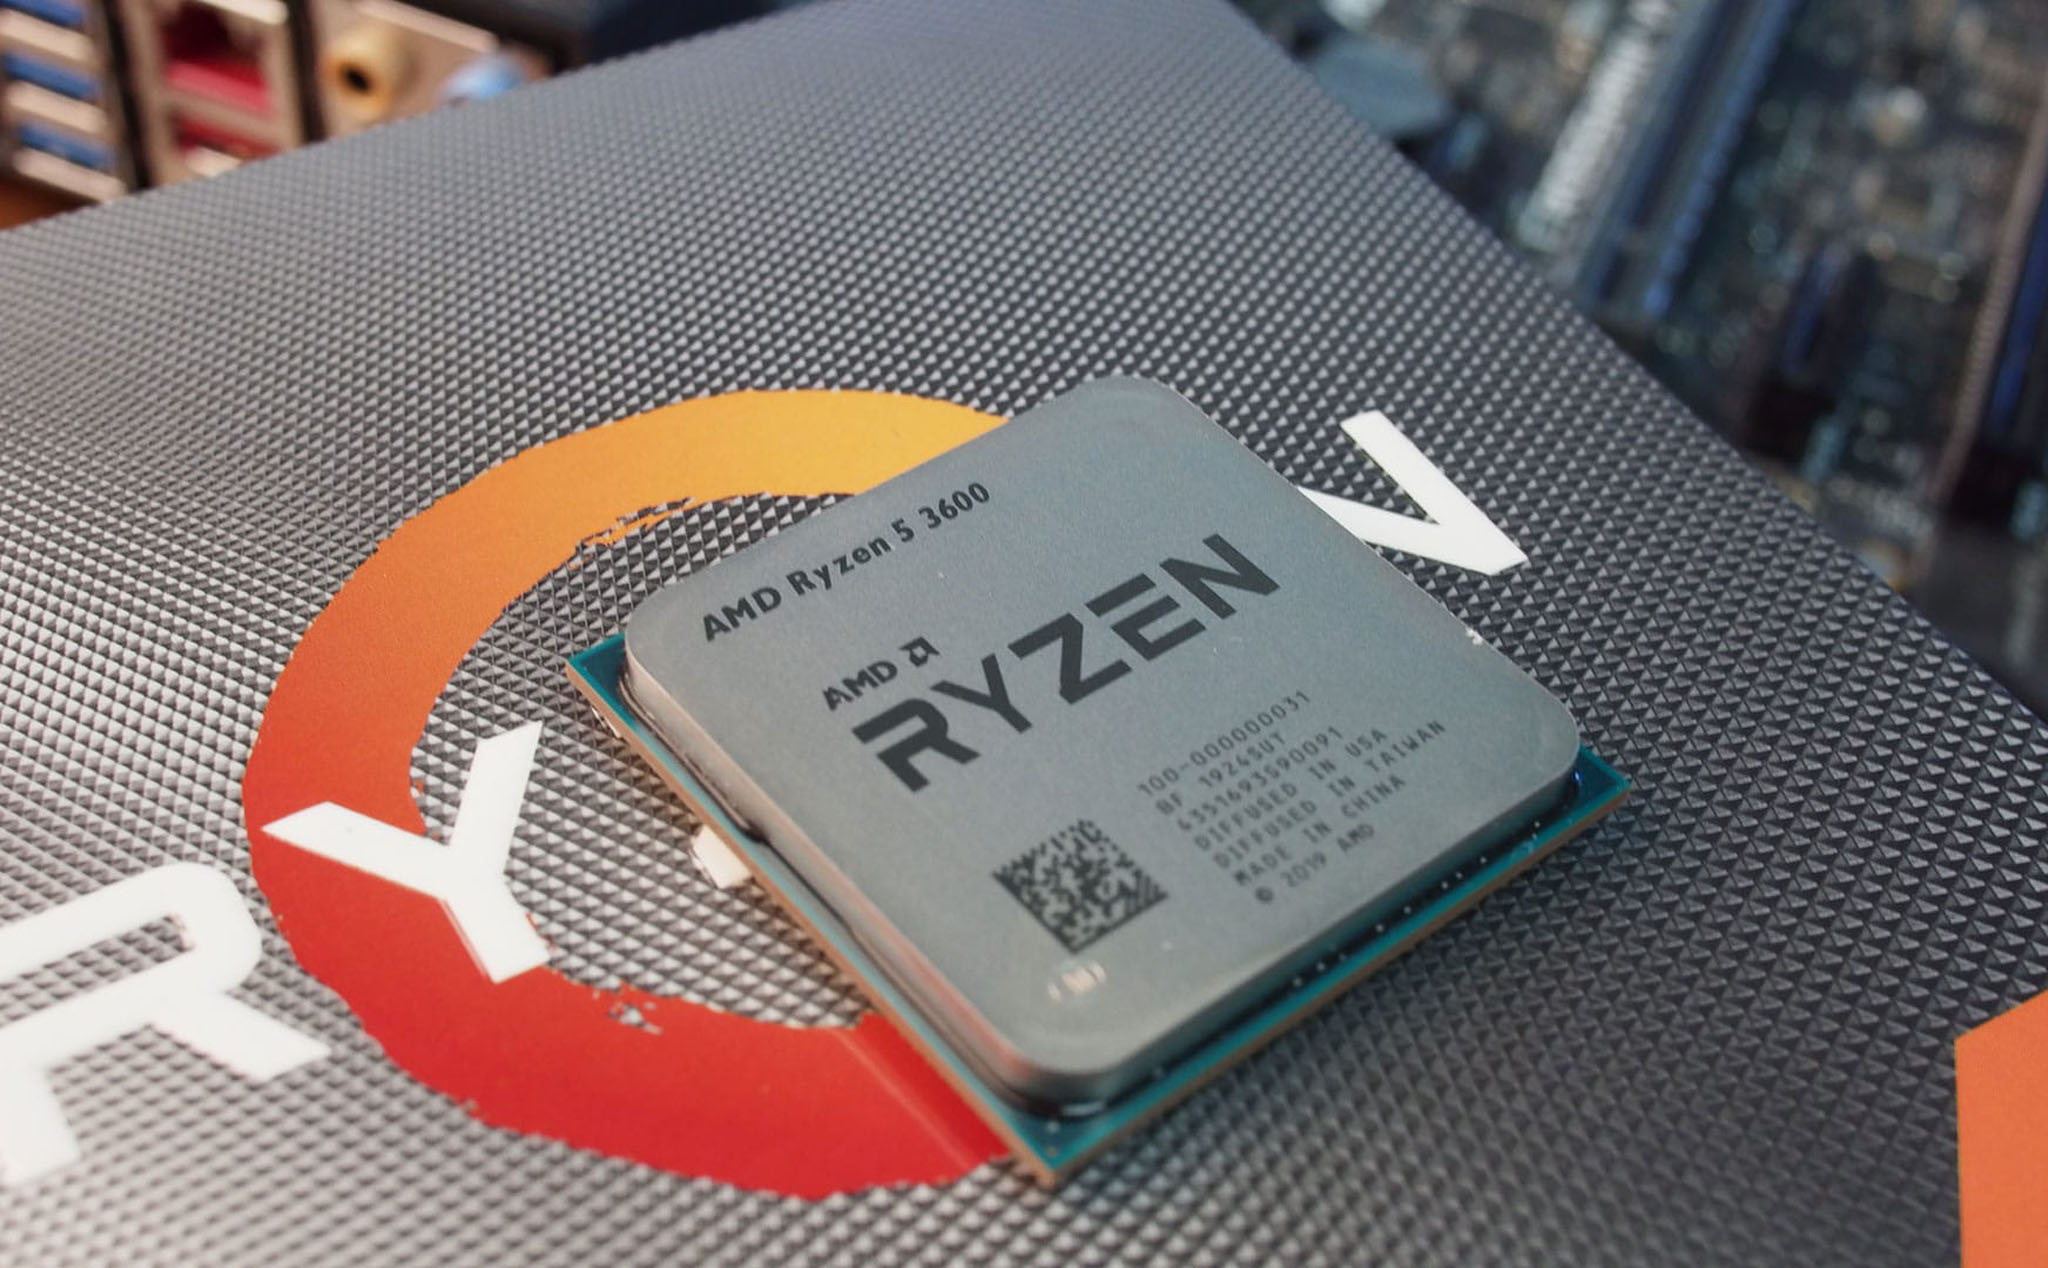 AMD thay đổi ý kiến, sẽ có BIOS hỗ trợ Ryzen 4000 trên main B450 và X470